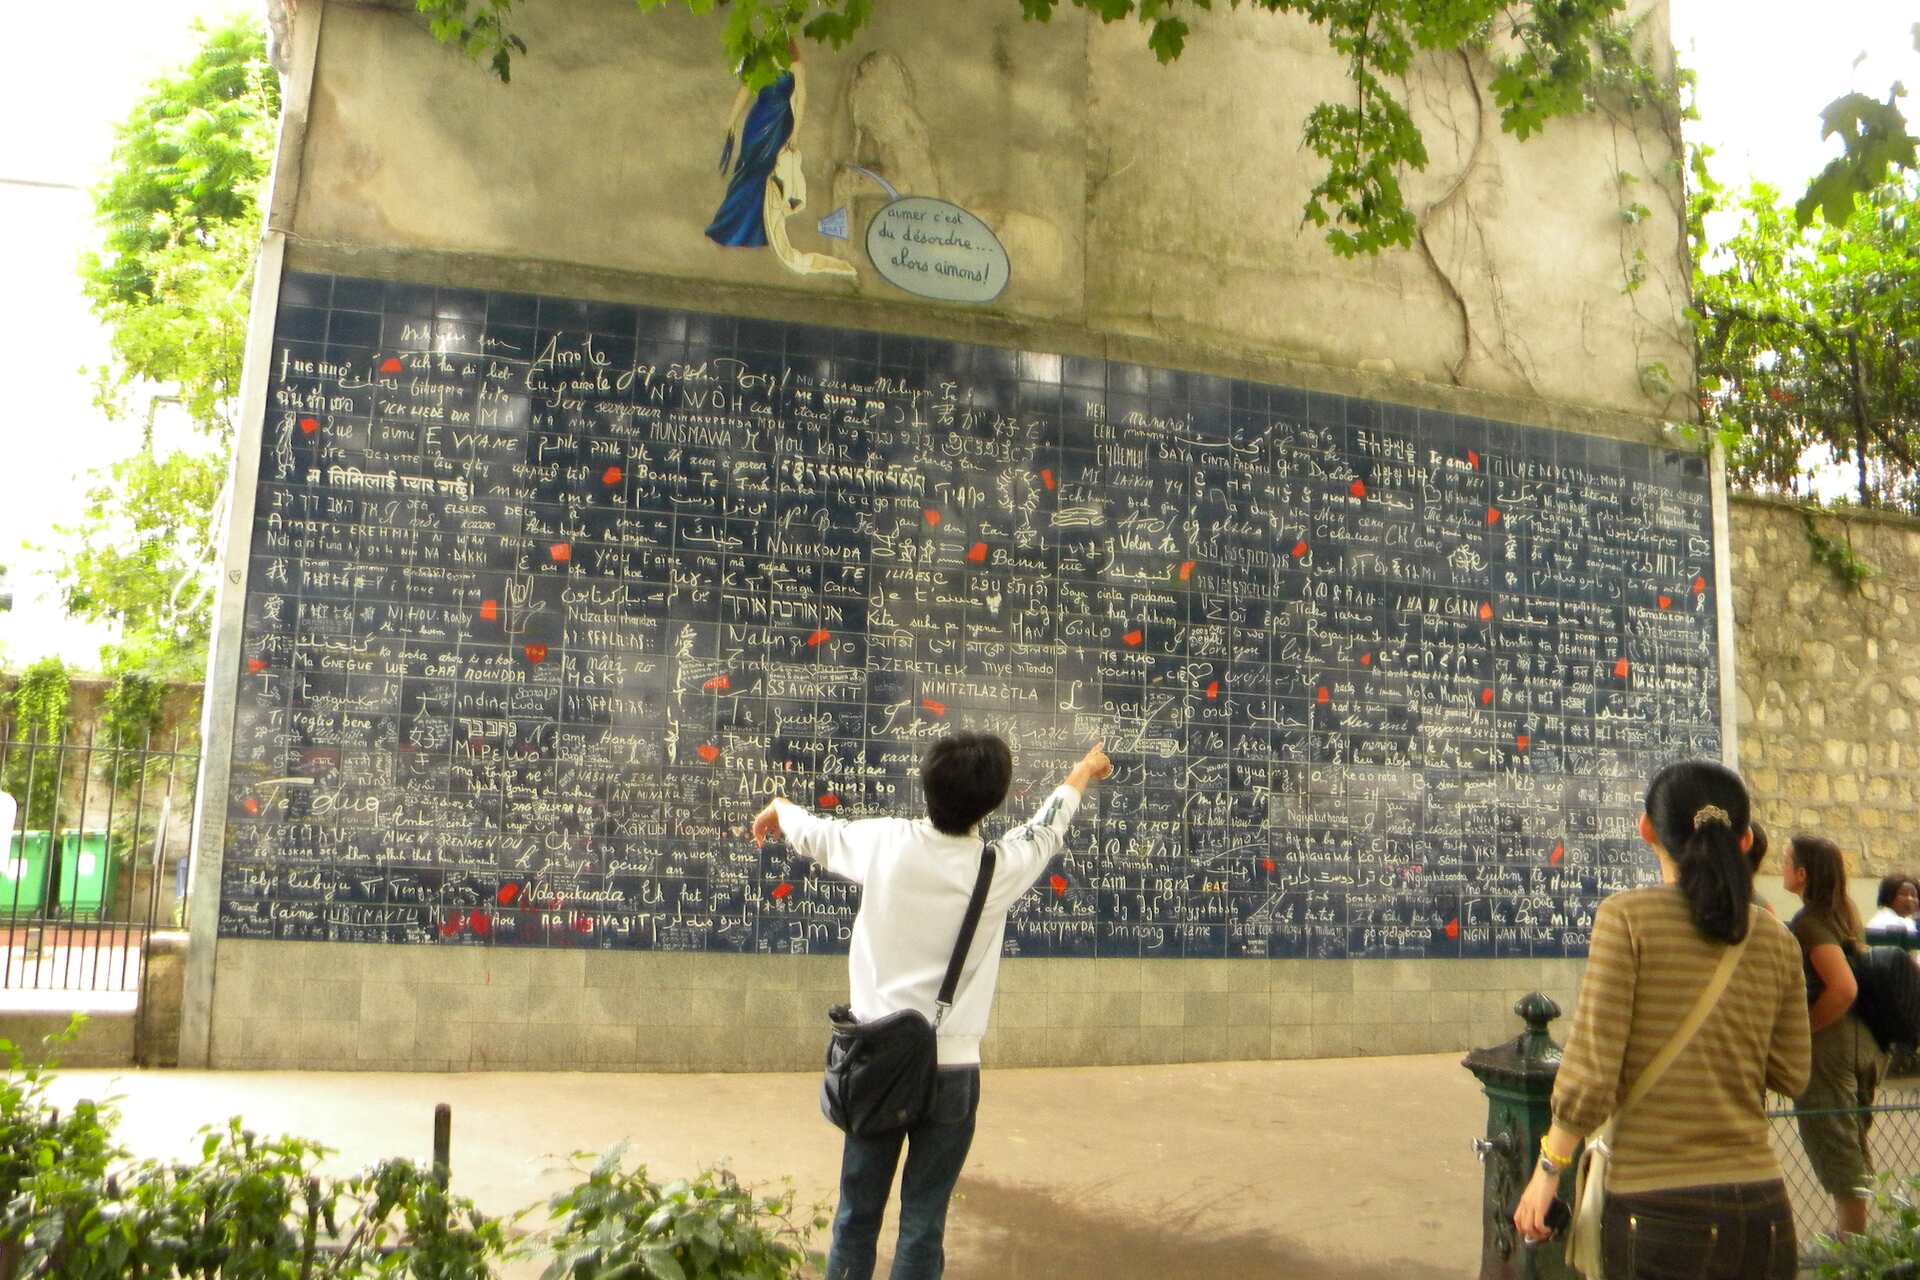 Kjærlighet: "Kjærlighetens mur" i Montmartre